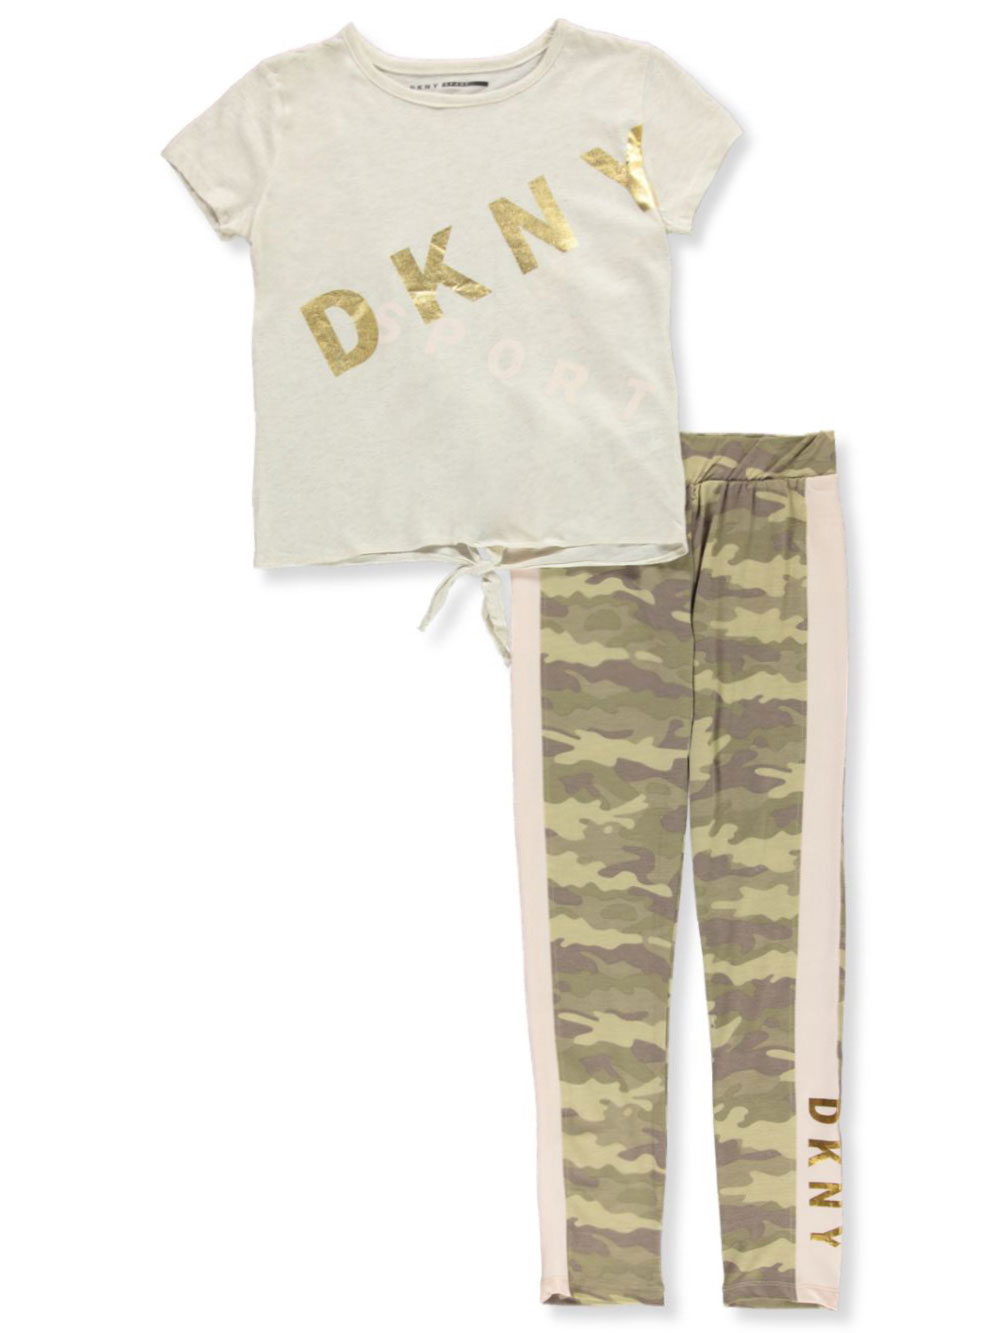 DKNY Pant Sets